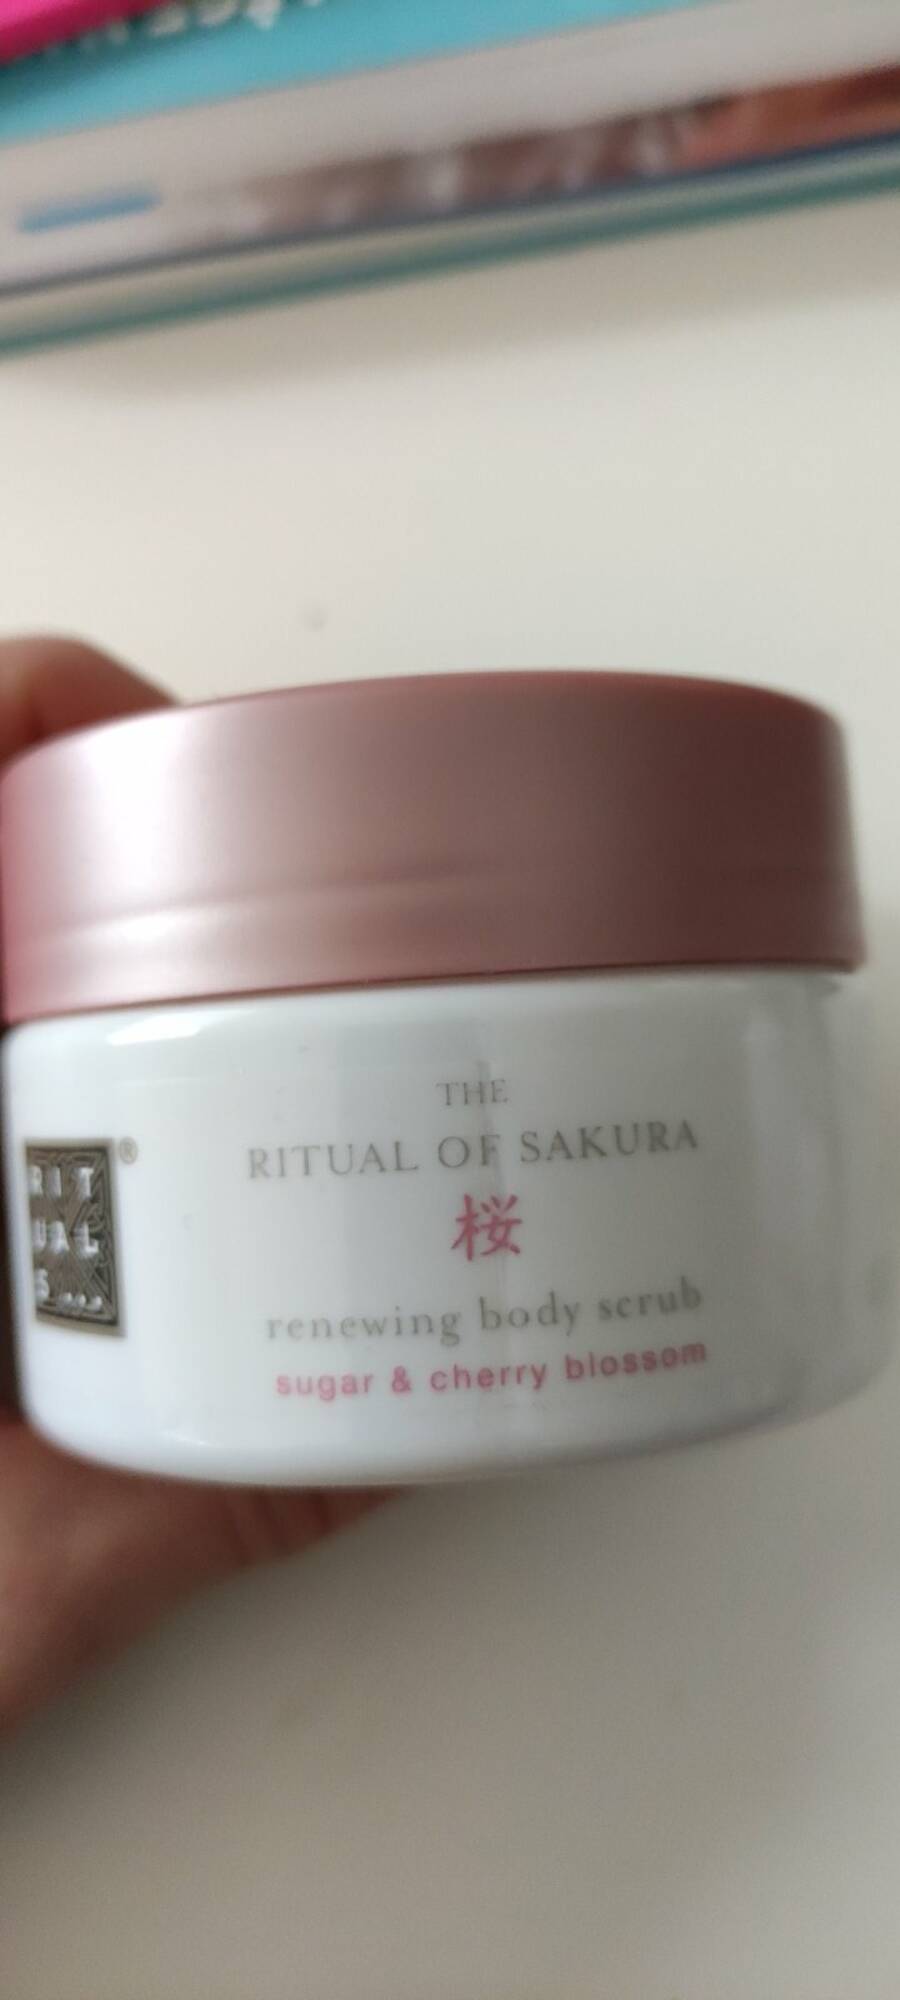 RITUALS - The ritual of sakura - Renewing body scrub